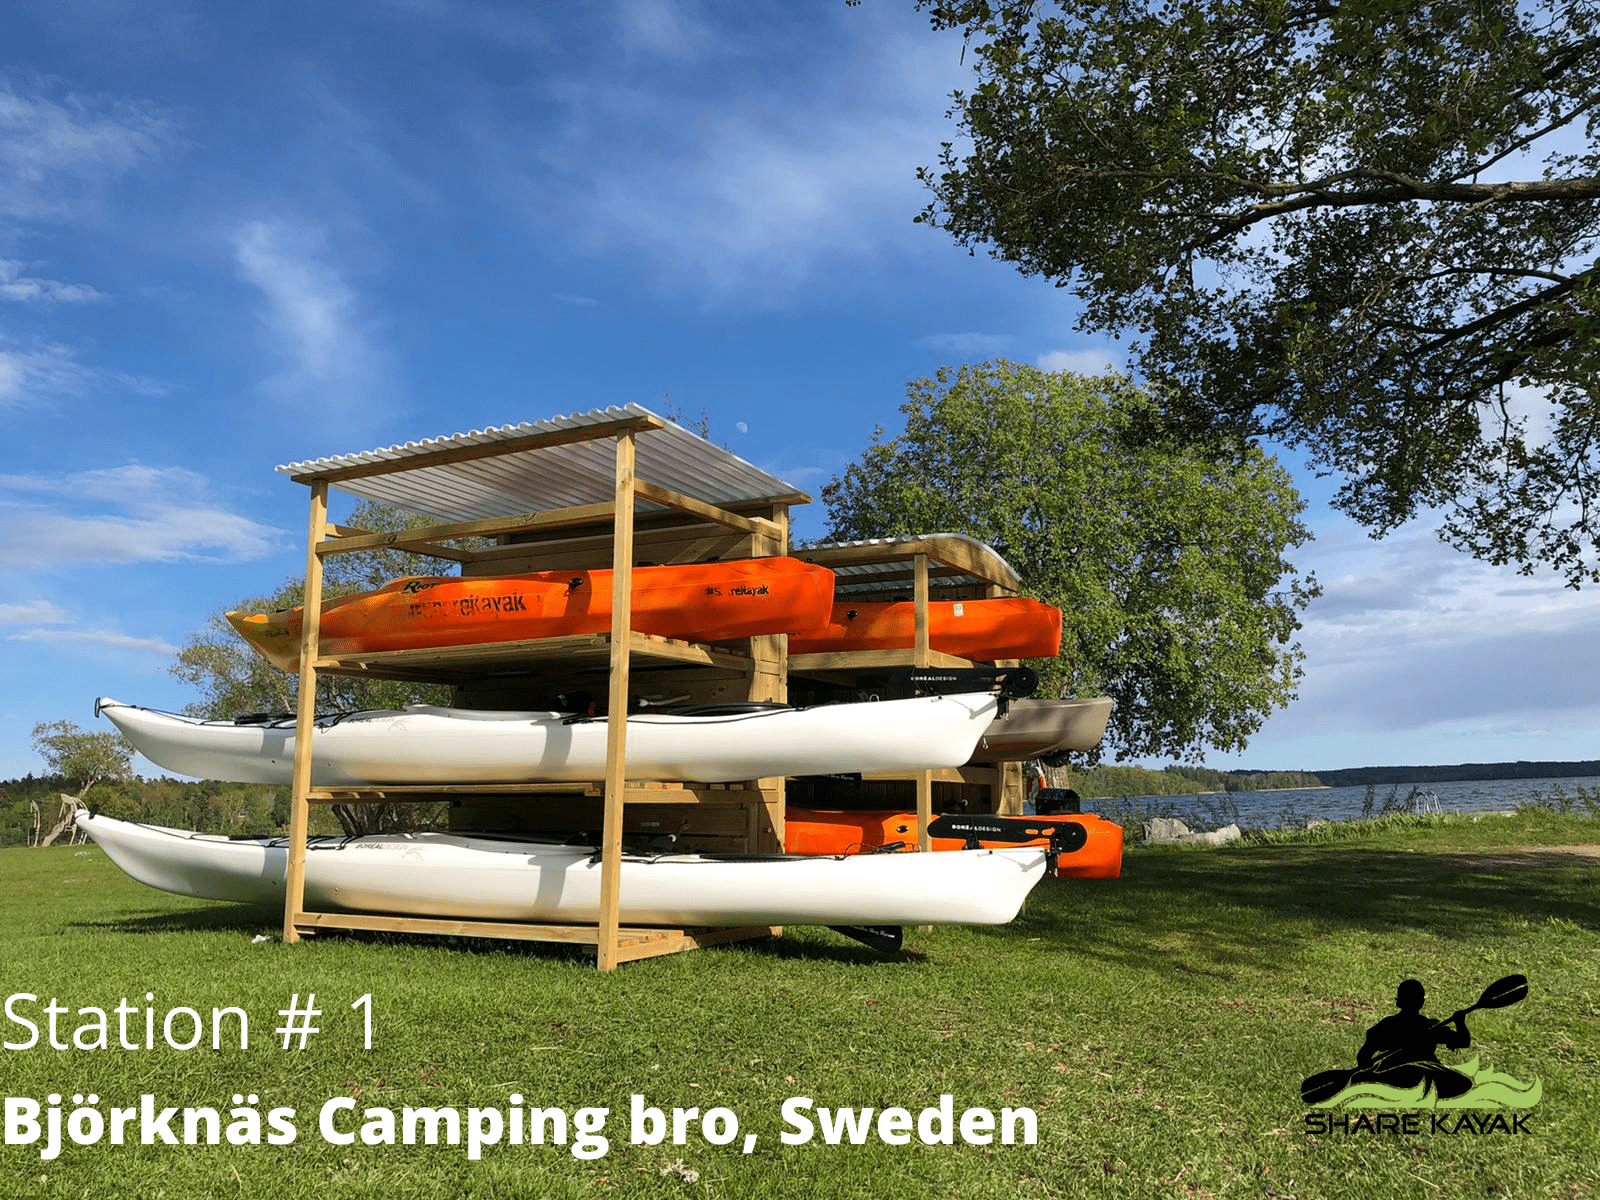 Björknäs Camping bro